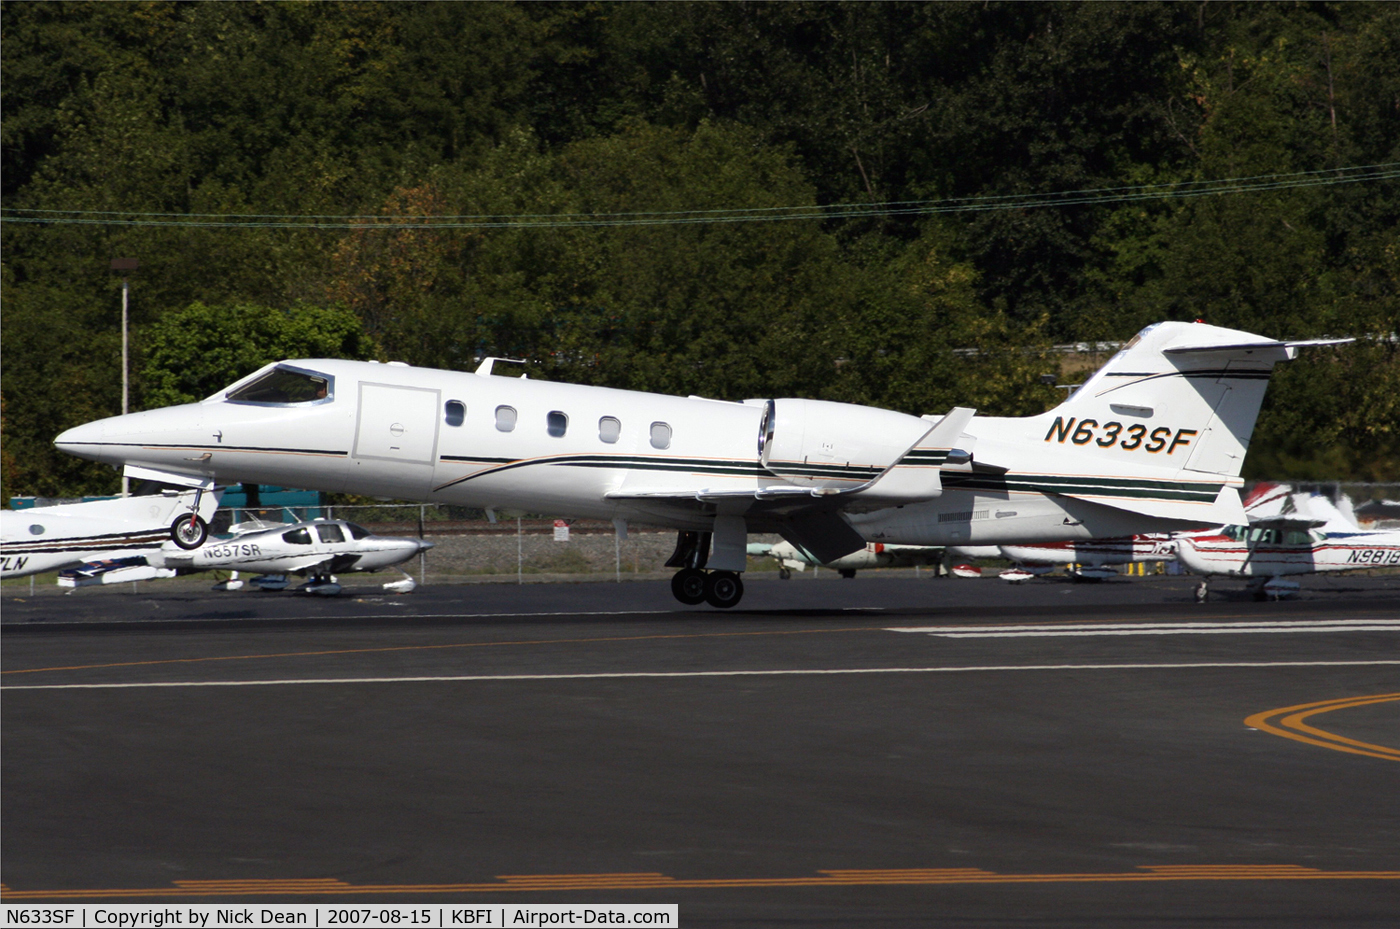 N633SF, 2002 Learjet Inc 31A C/N 241, KBFI